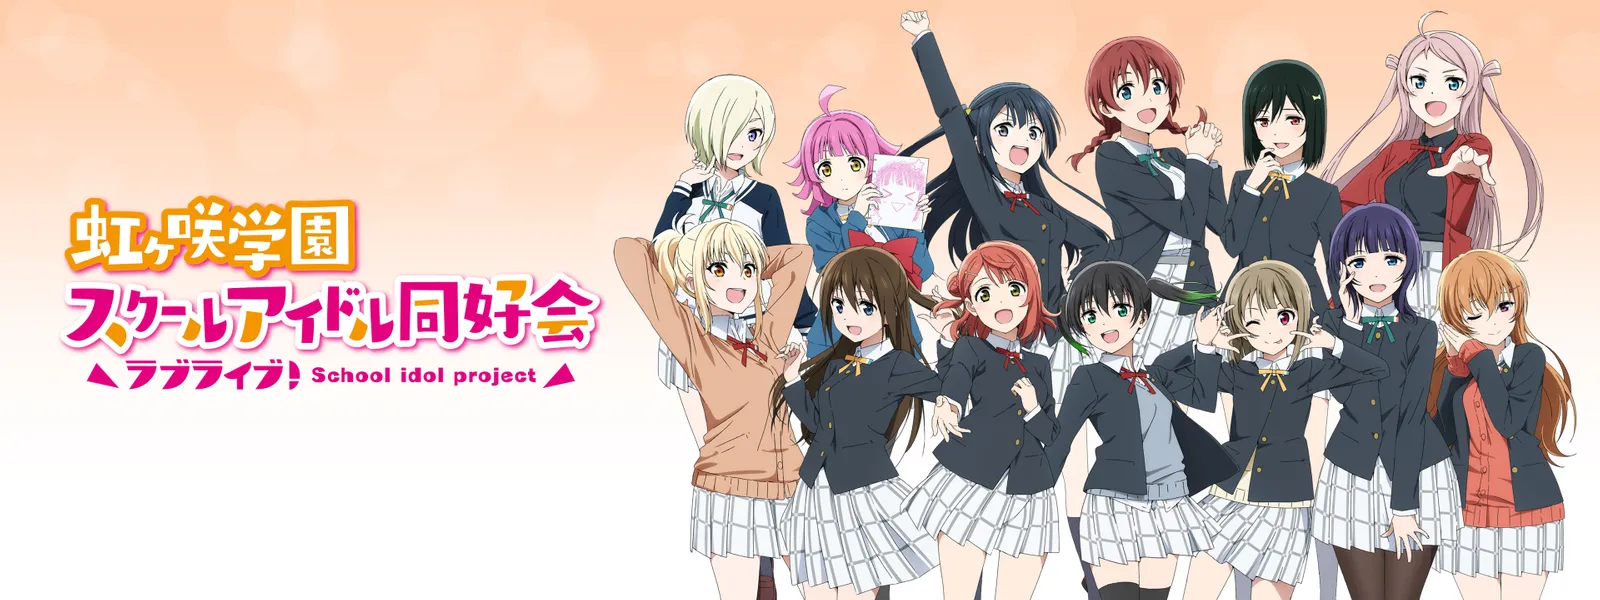 ラブライブ! 虹ヶ咲学園スクールアイドル同好会TVアニメ2期 が見放題！ | Hulu(フールー) 【お試し無料】